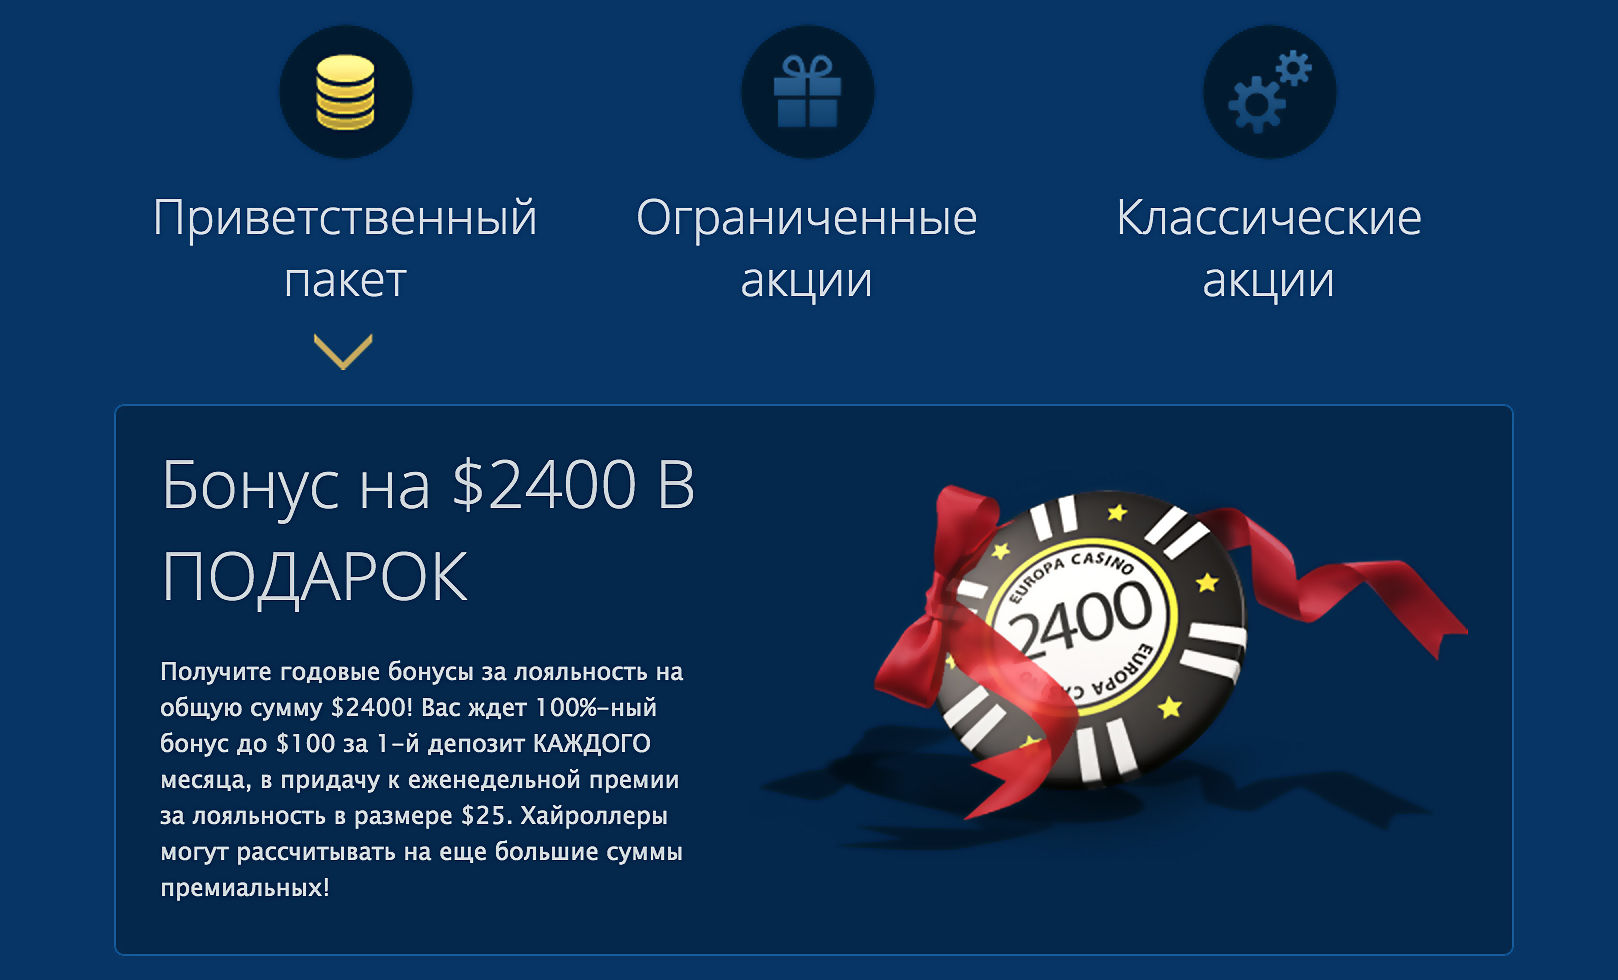 Онлайн казино депозиты вулкан 24 игровые автоматы официальный сайт бонус за регистрацию